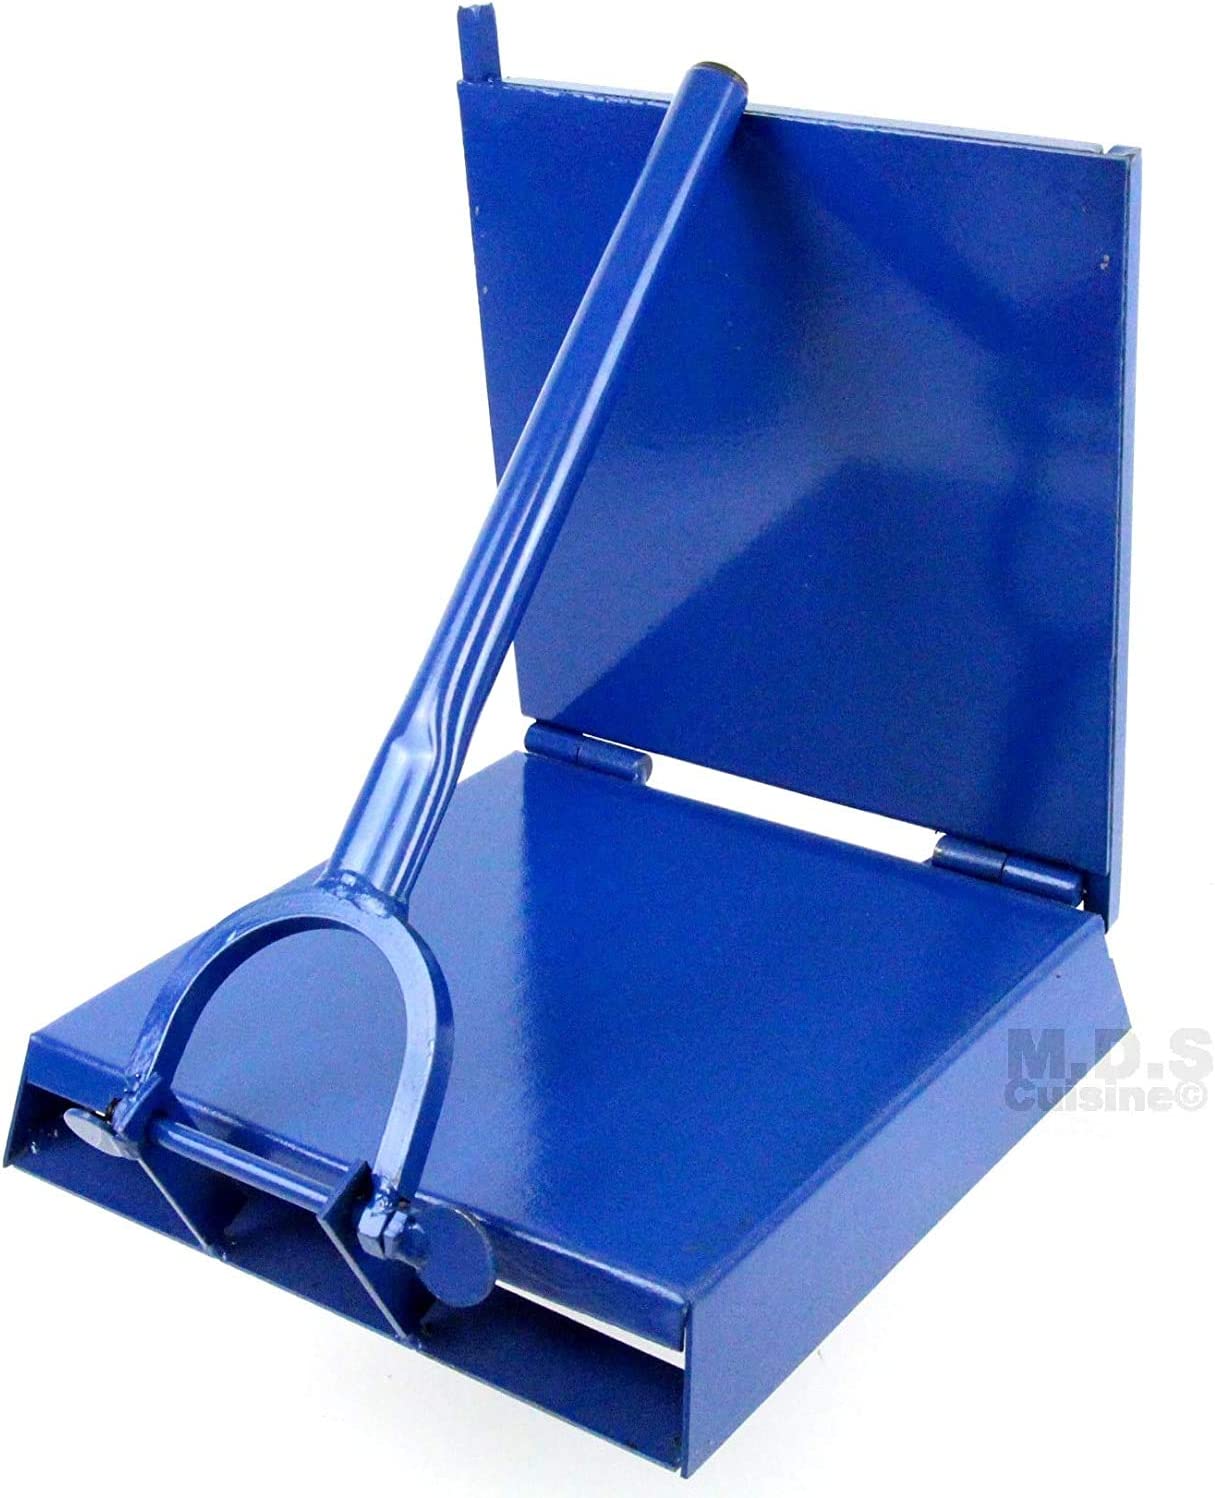 10" x 10" Blue Square Manual Tortilla Press